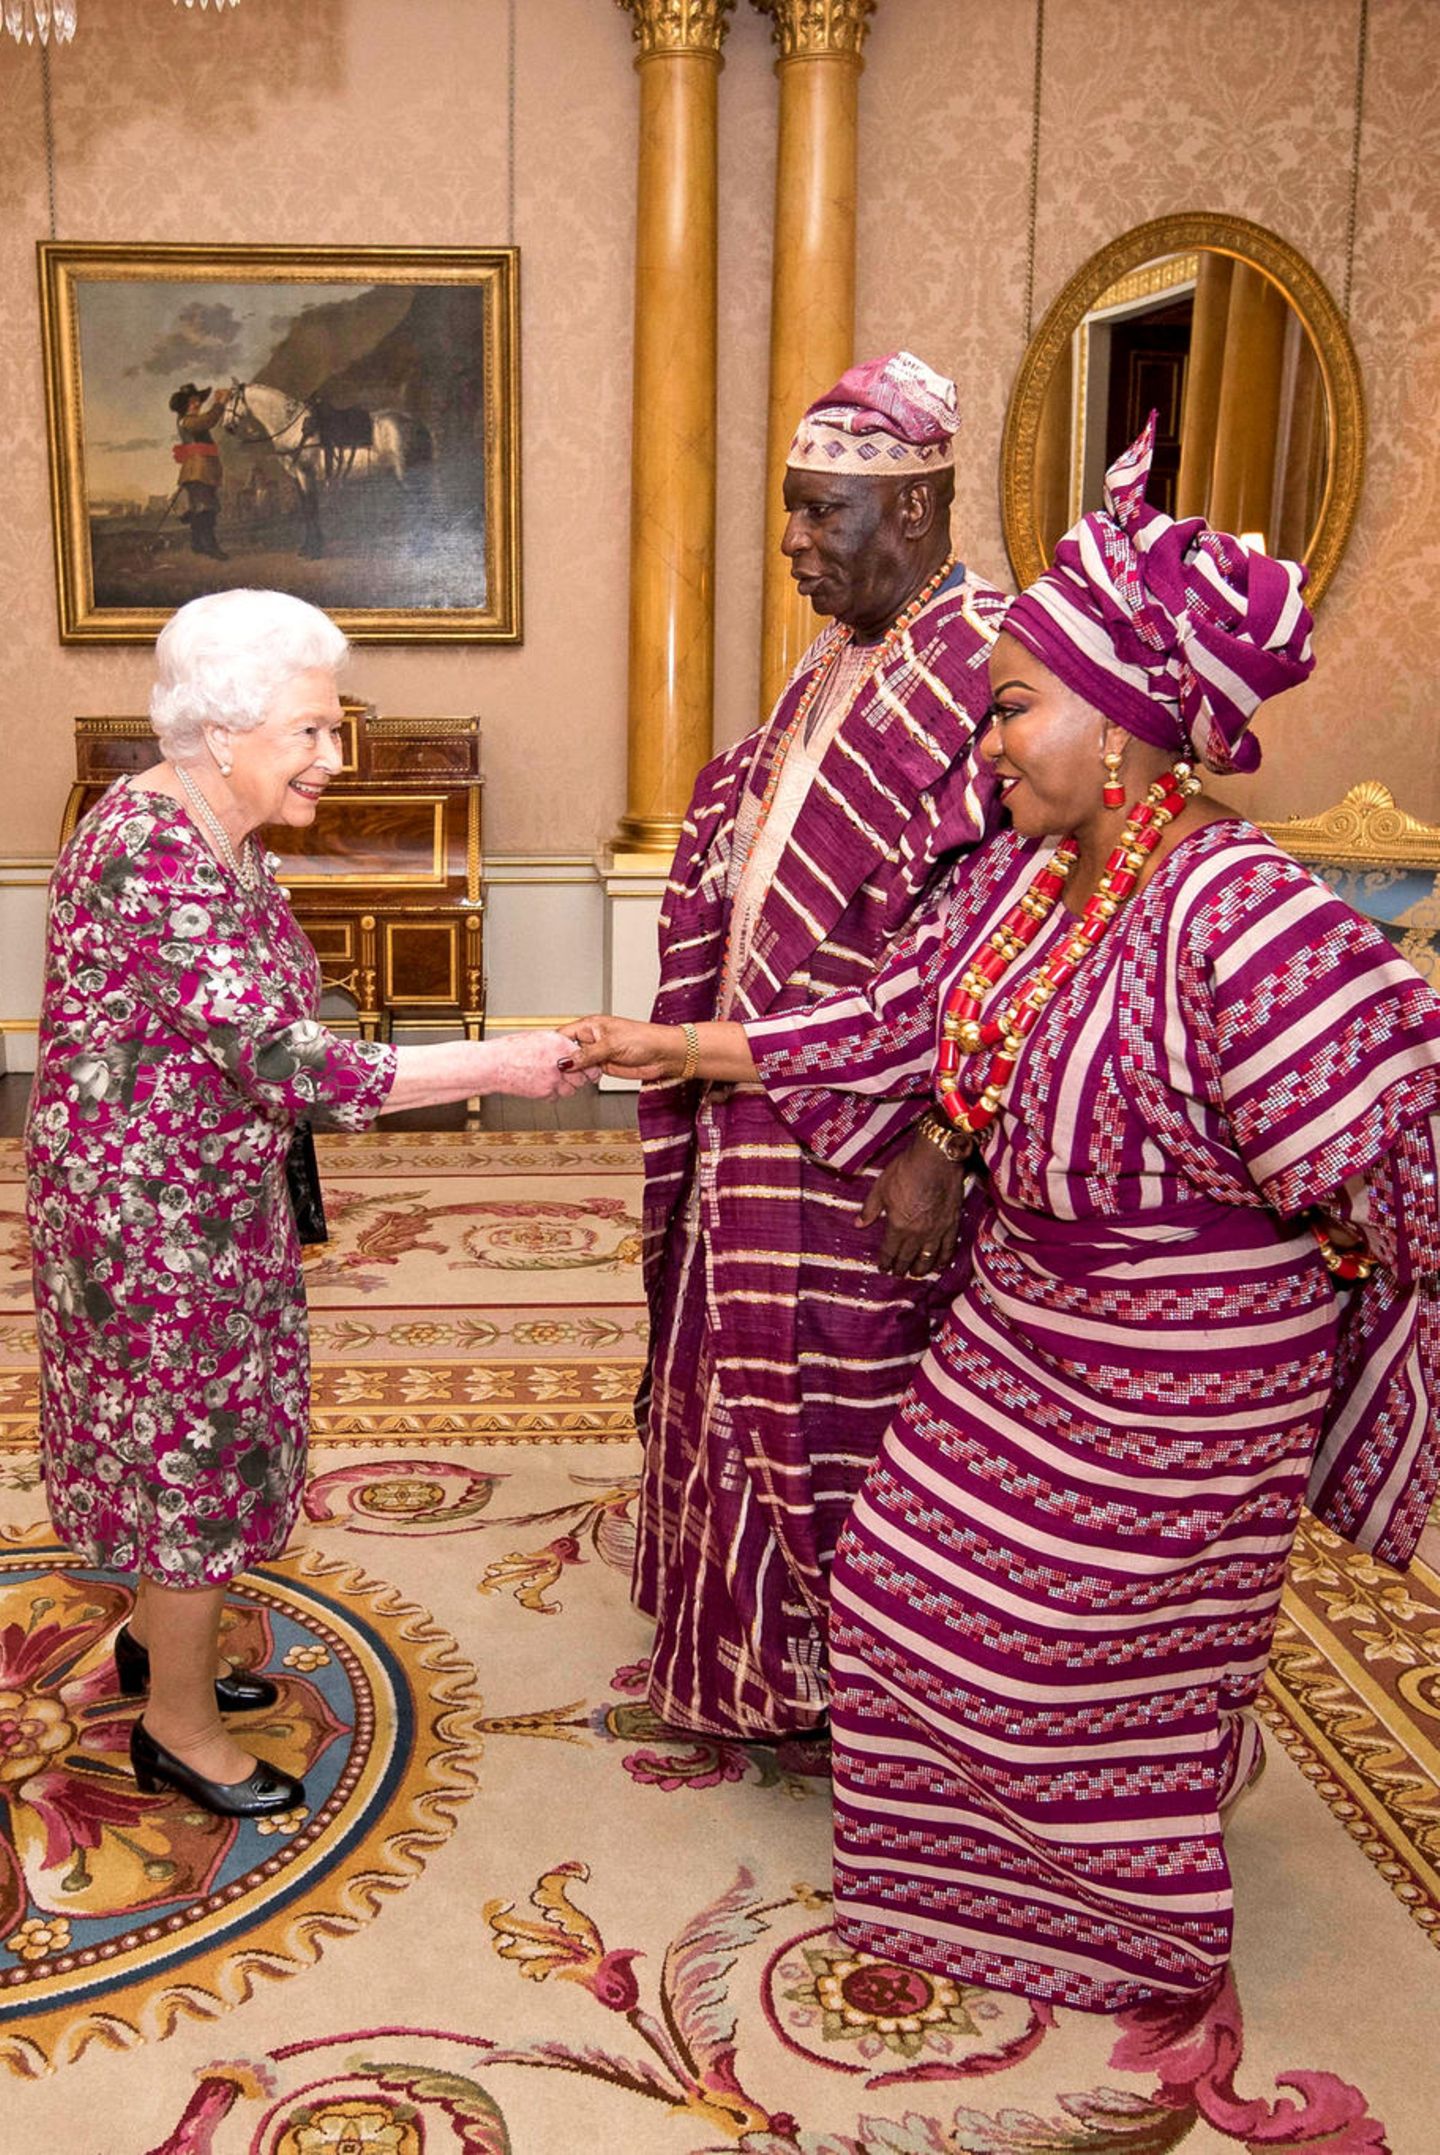 6. Dezember 2017  Queen Elizabeth empfängt George Adesola Oguntade aus Nigeria mit seiner Frau zu einer Privataudienz im Buckingham Palace. Dabei sind alle Augen auf die traditionelle Kleidung der Gäste gerichtet, die perfekt mit dem Kleid der Queen harmoniert. 